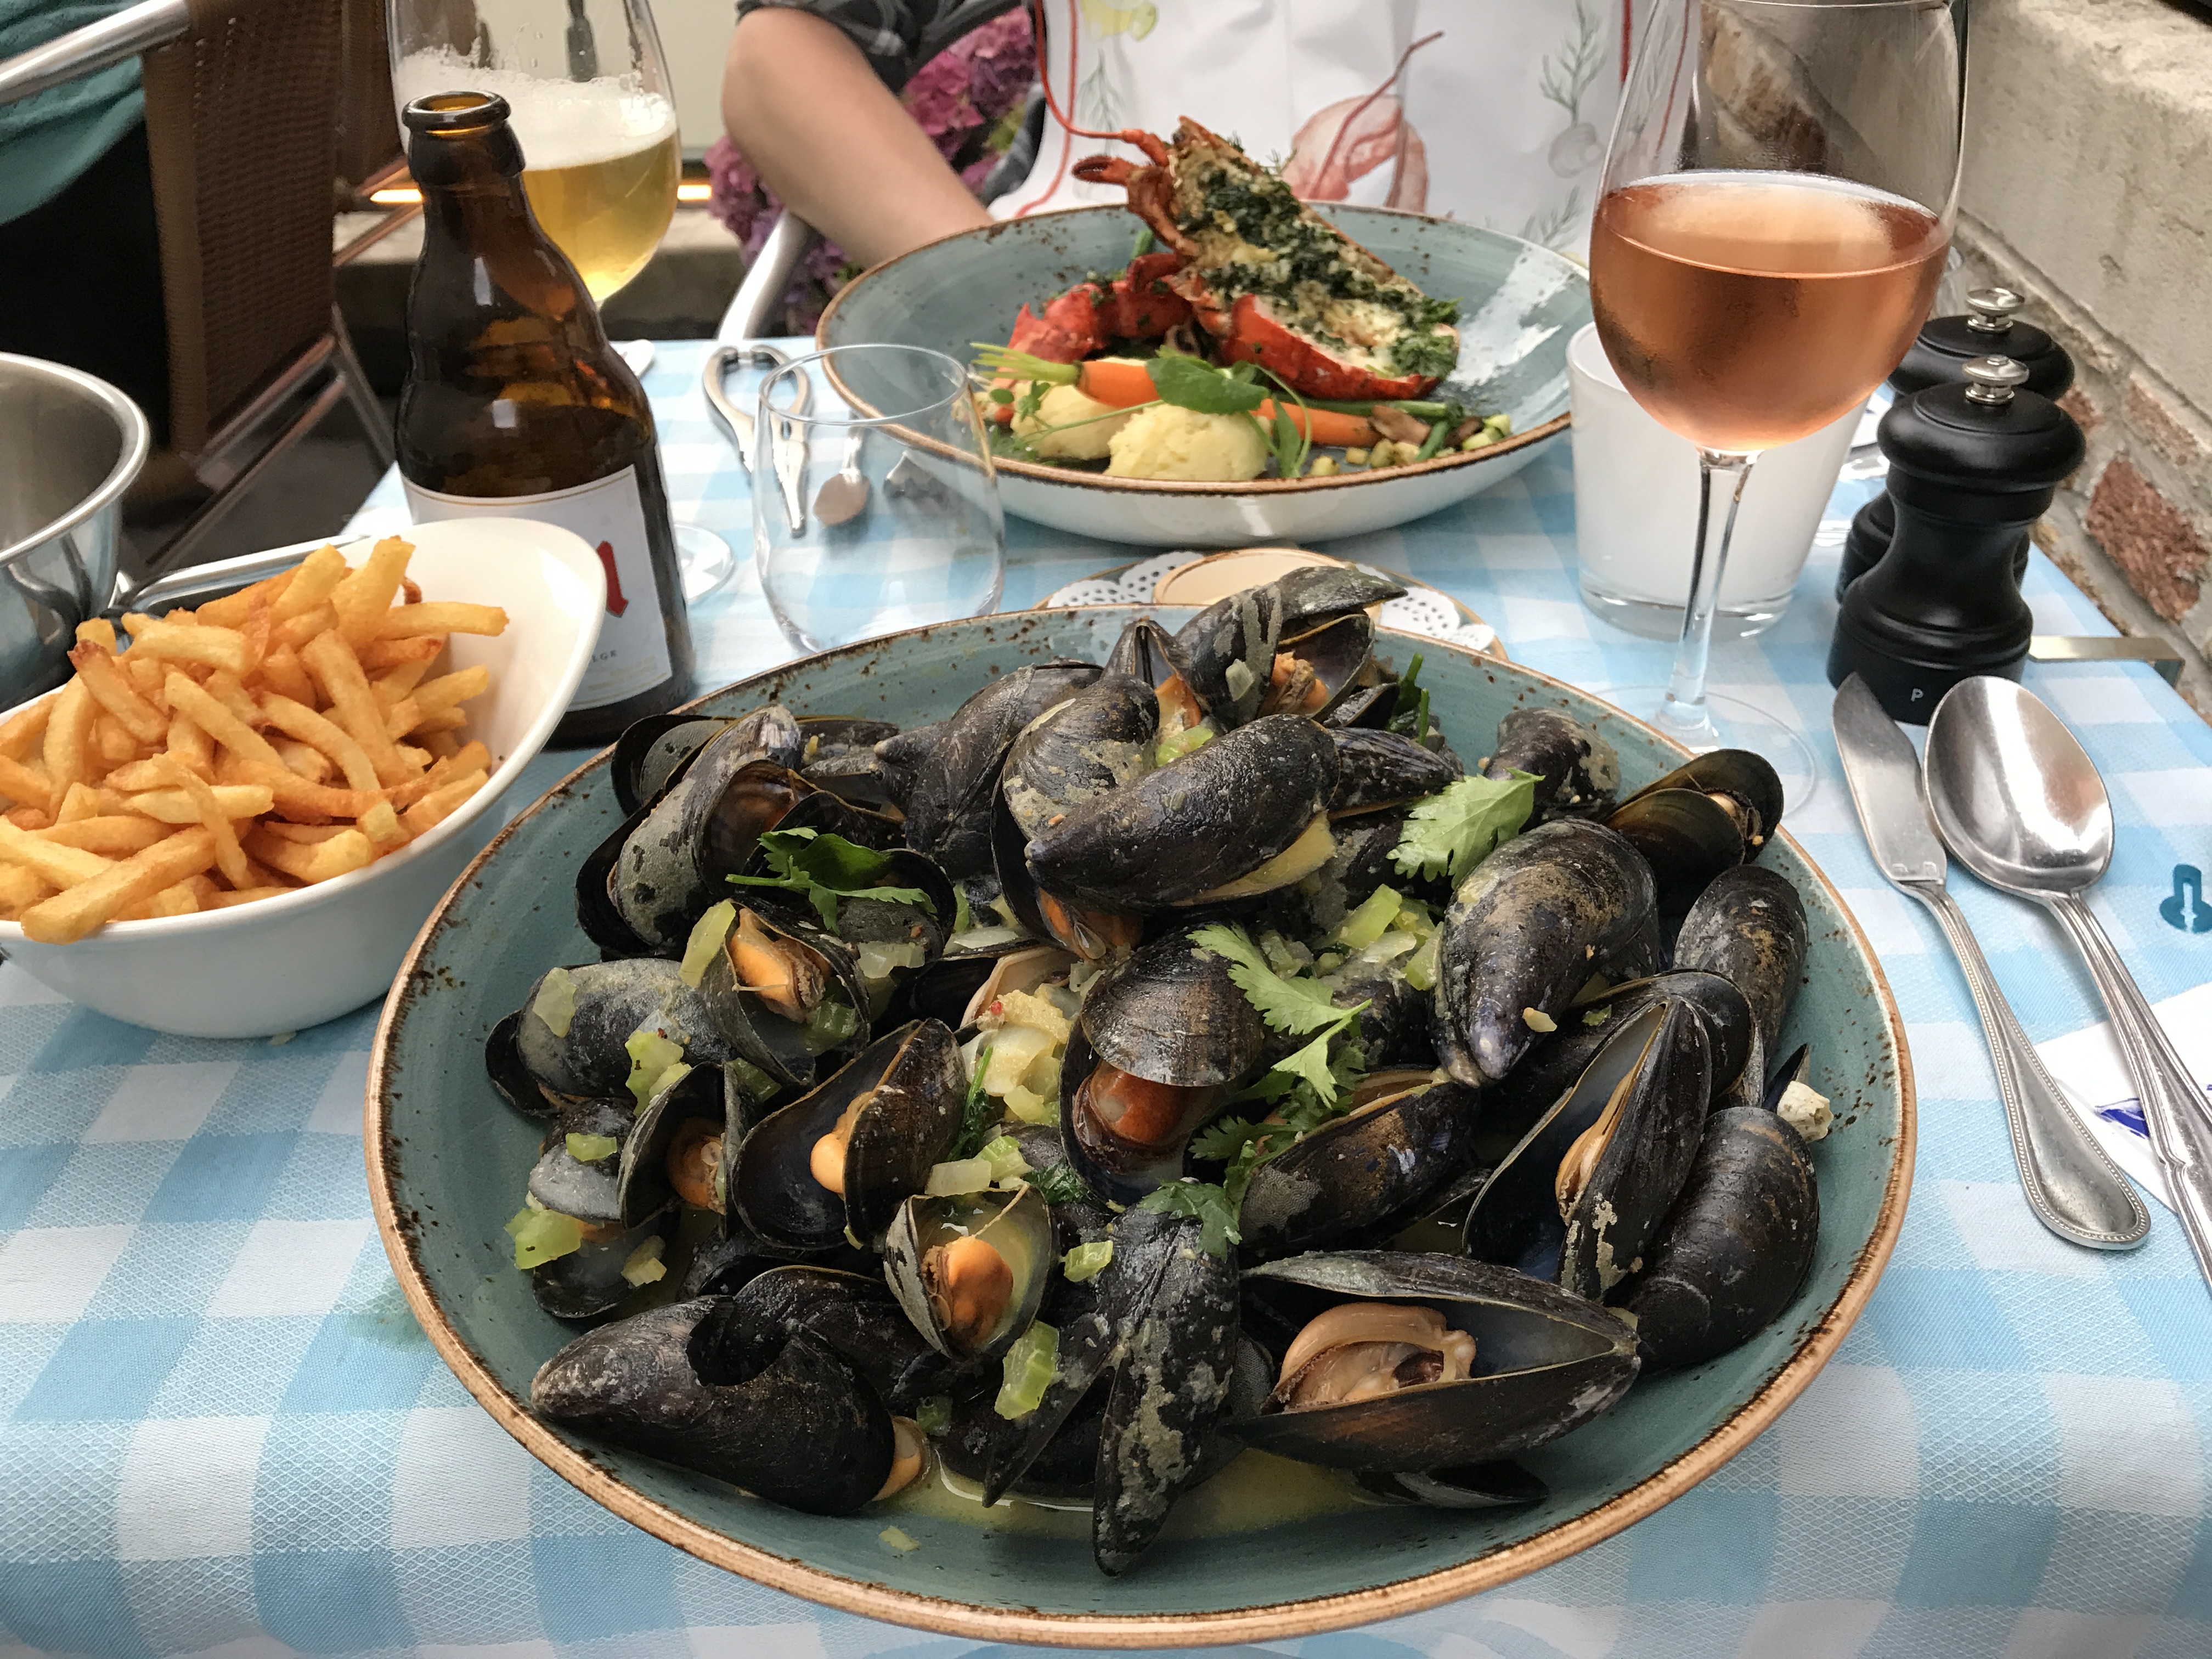 Mussels at De Gouden Kroes restaurant in Bruges, Belgium.